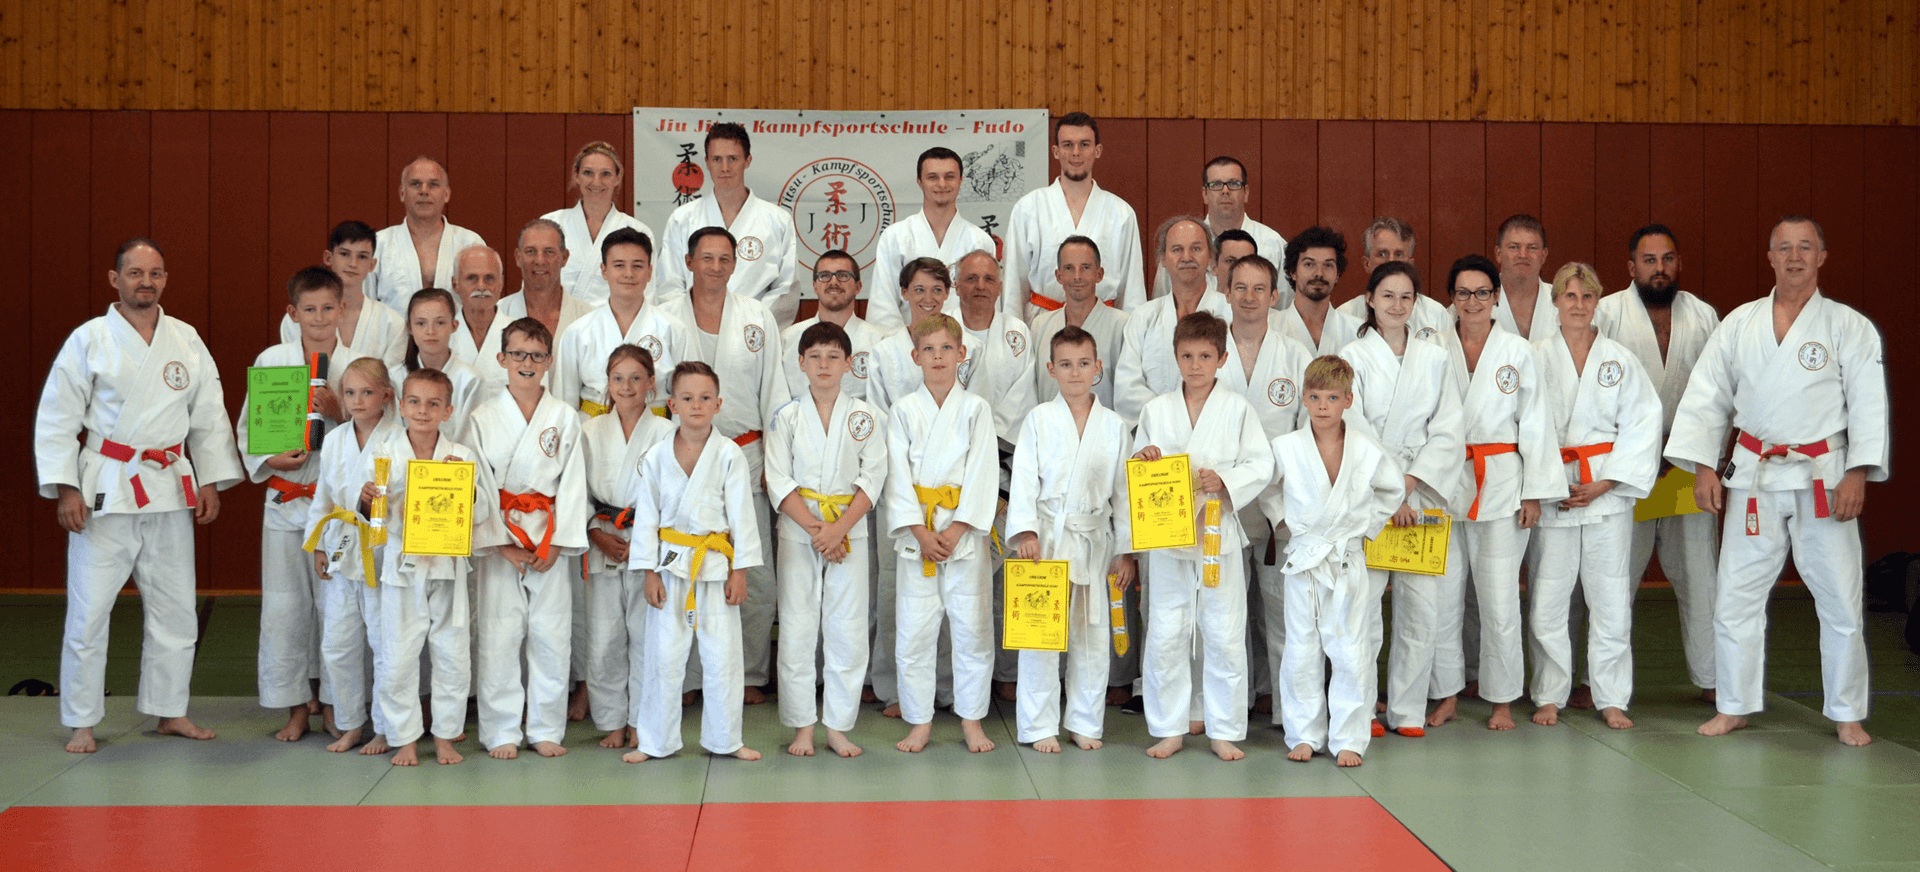 (c) Kampfsportschule-fudo.de